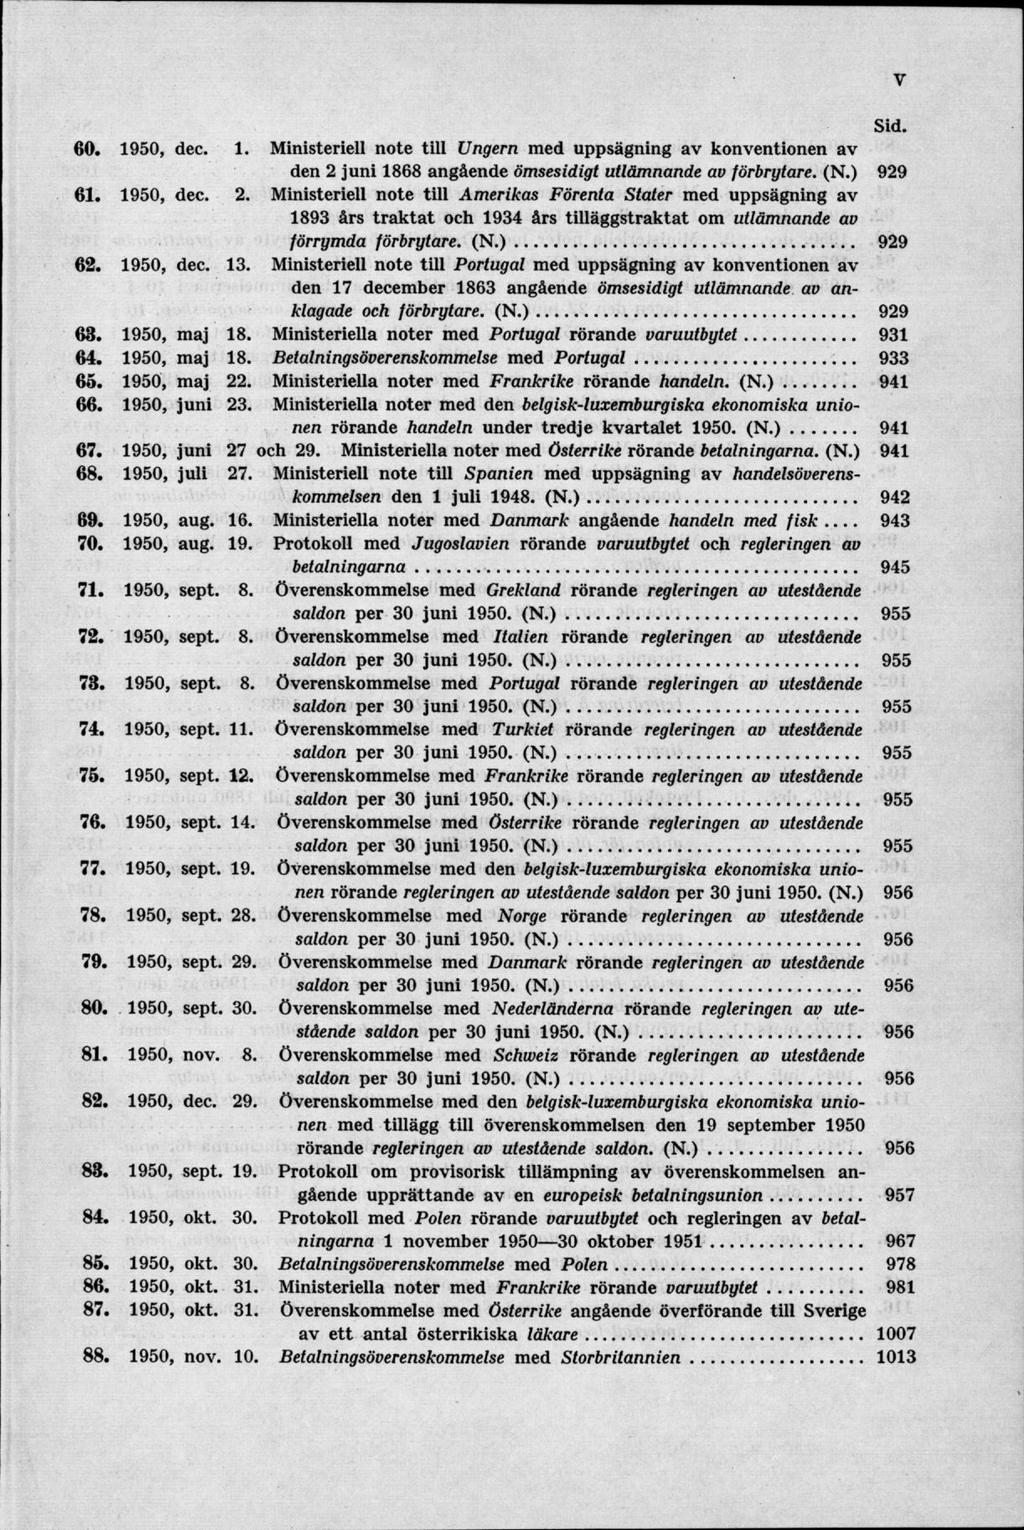 60. 1950, dec. 1. Ministeriell note till Ungern med uppsägning av konventionen av den 2 